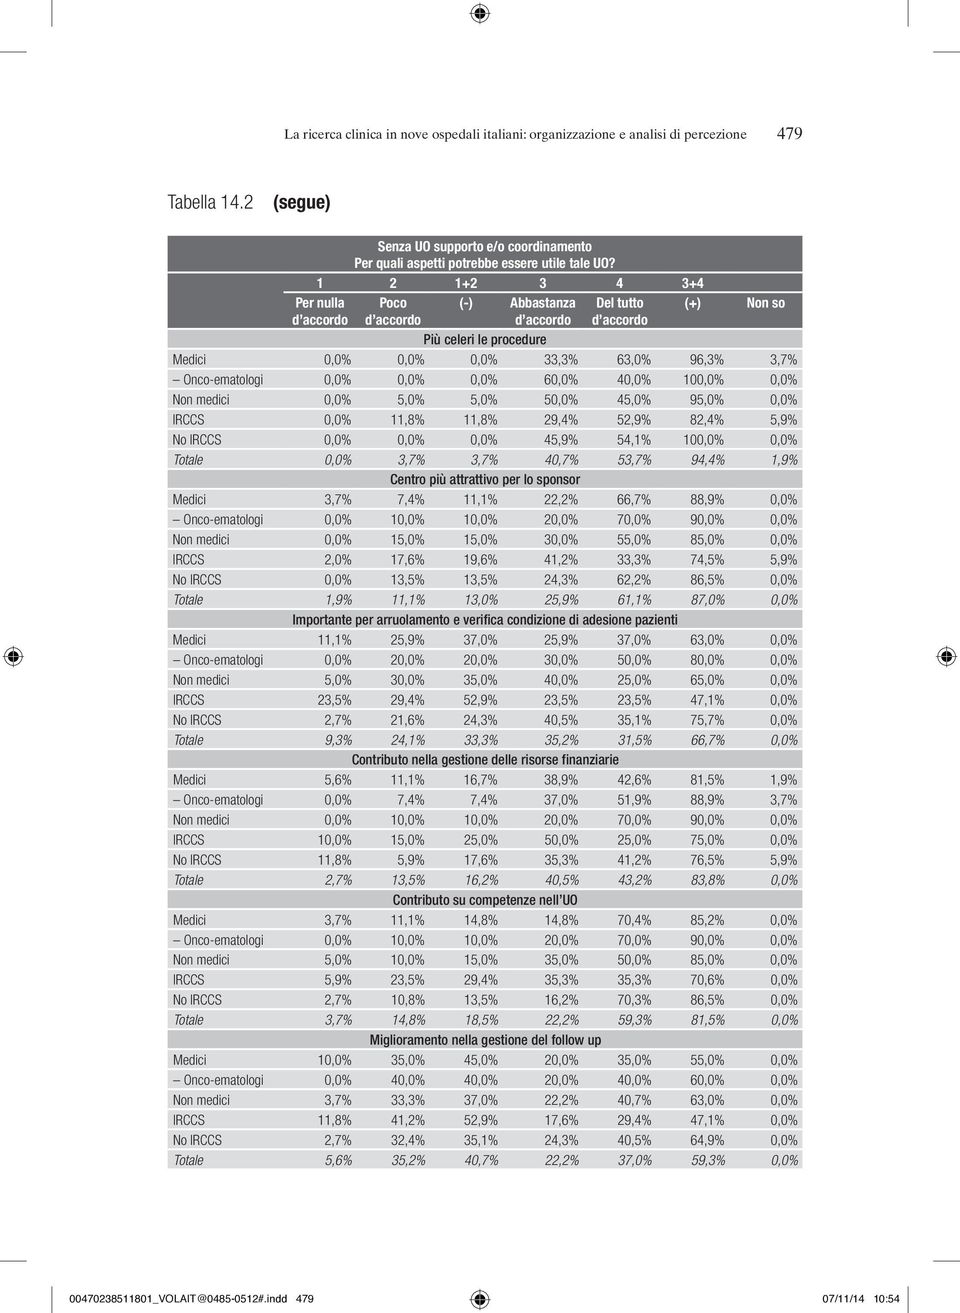 0,0% 0,0% 60,0% 40,0% 100,0% 0,0% Non medici 0,0% 5,0% 5,0% 50,0% 45,0% 95,0% 0,0% IRCCS 0,0% 11,8% 11,8% 29,4% 52,9% 82,4% 5,9% No IRCCS 0,0% 0,0% 0,0% 45,9% 54,1% 100,0% 0,0% Totale 0,0% 3,7% 3,7%